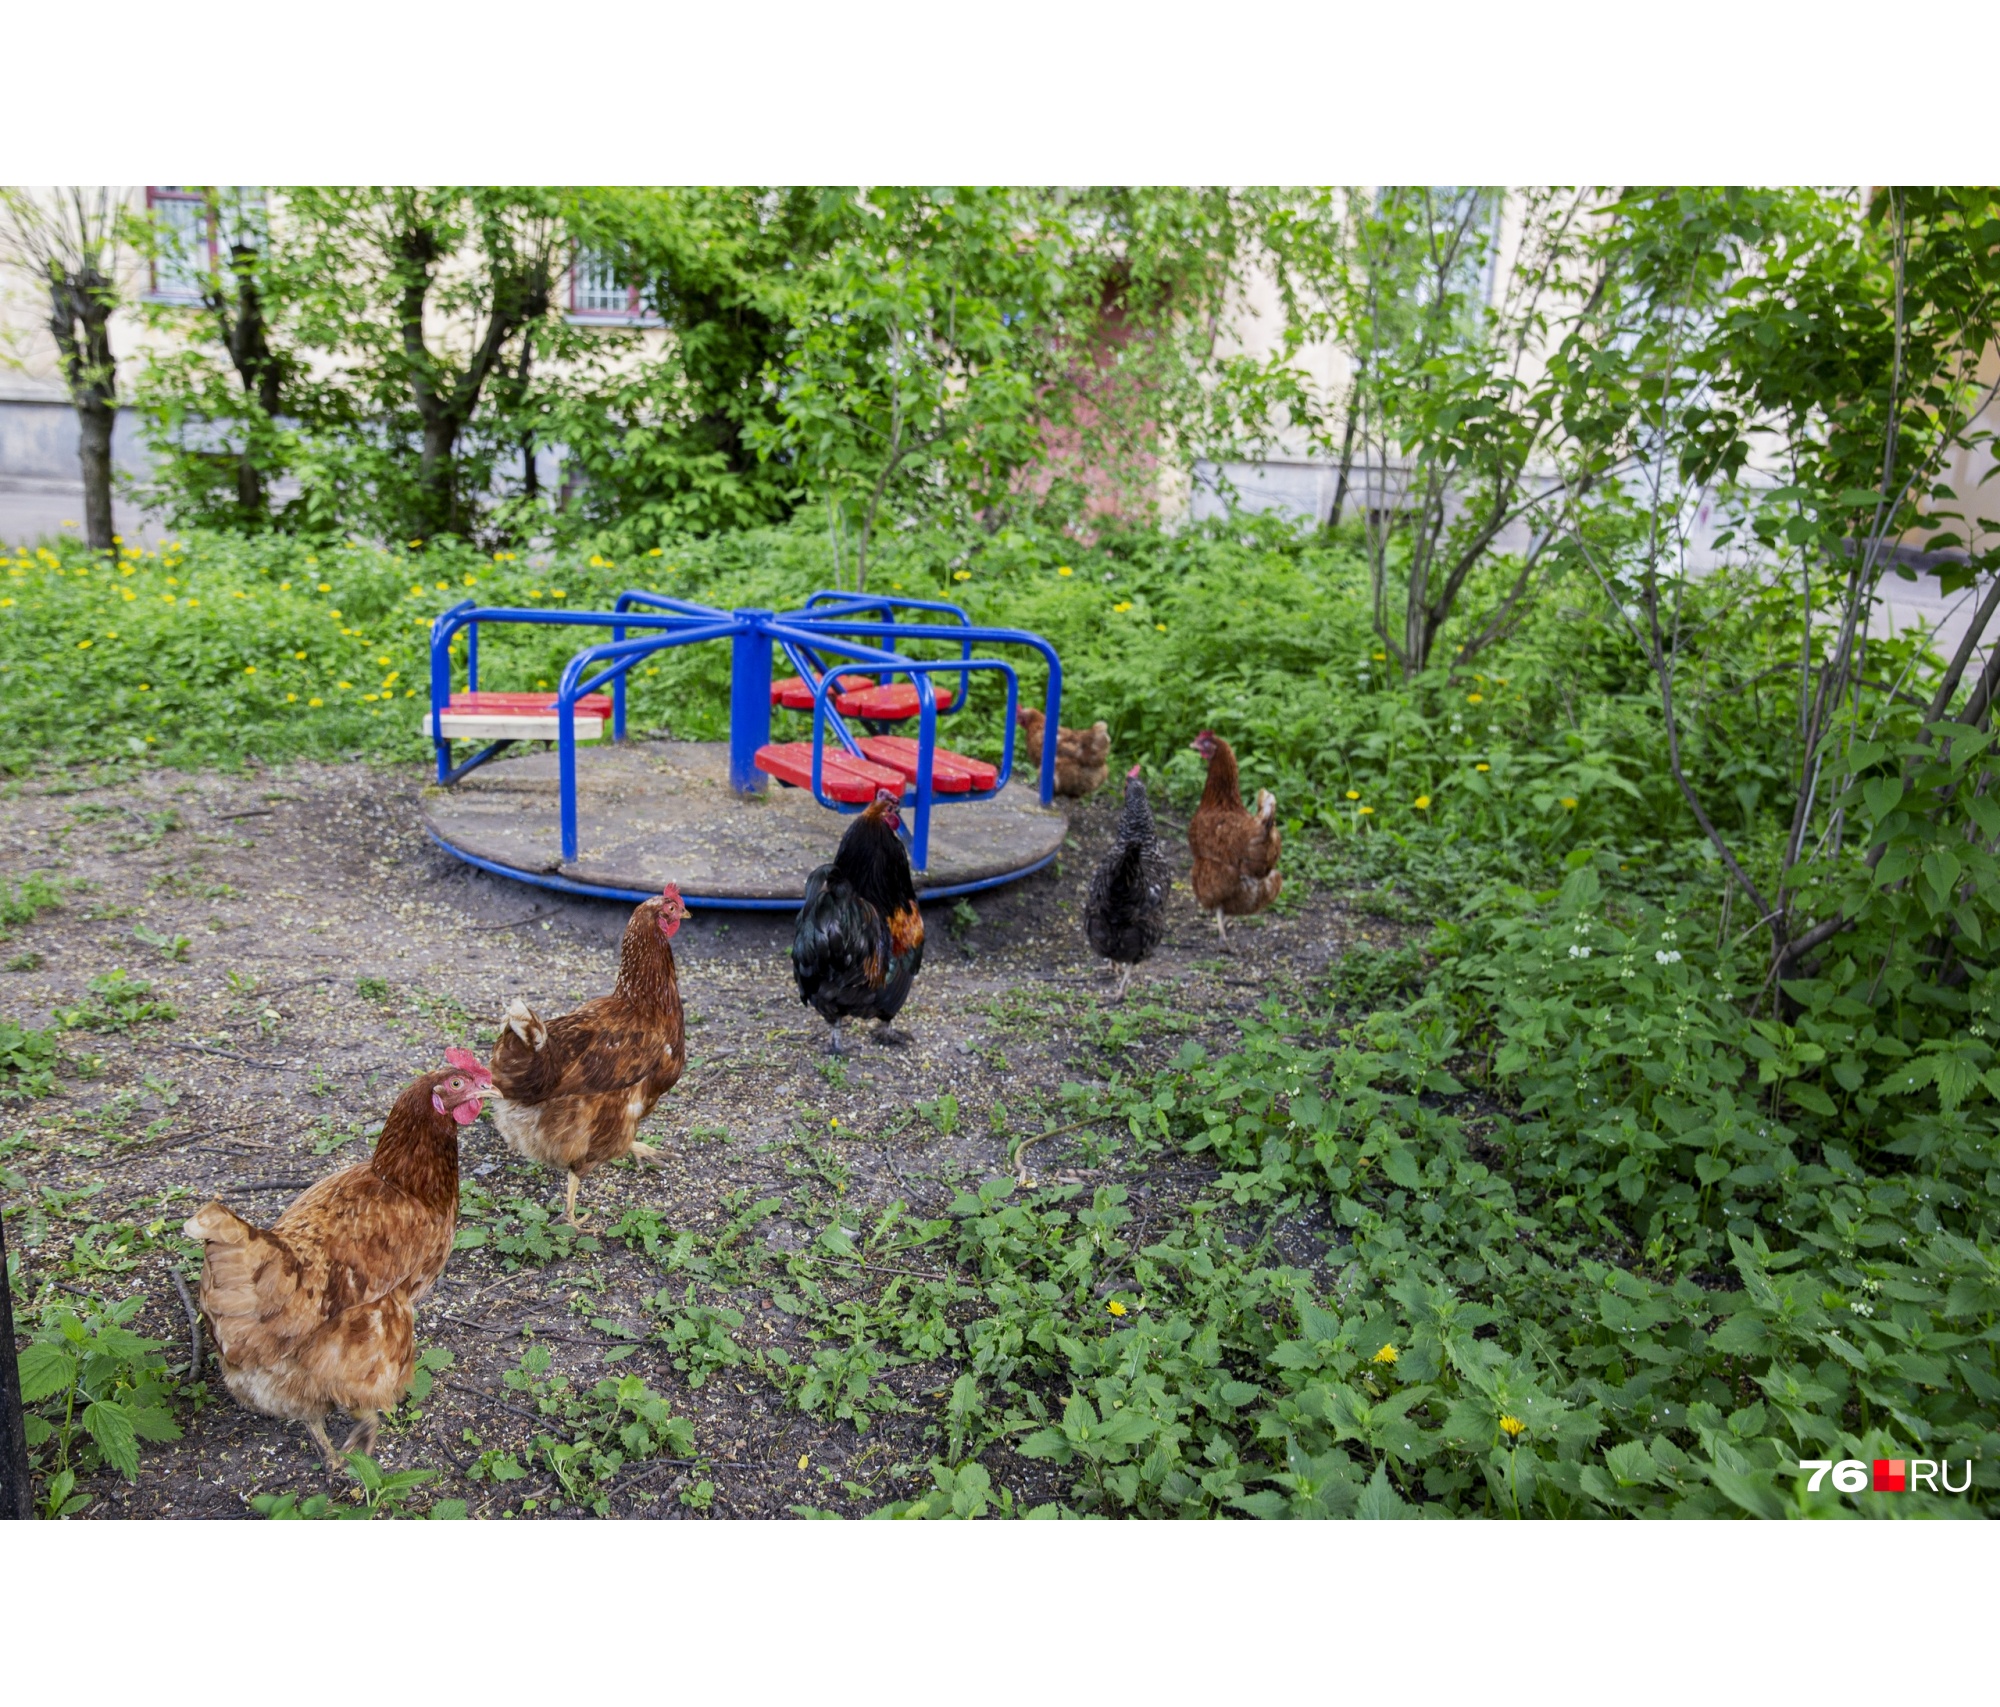 «Бандиты, скоро гопничать начнут»: на детской площадке в центре Ярославля поселились курицы